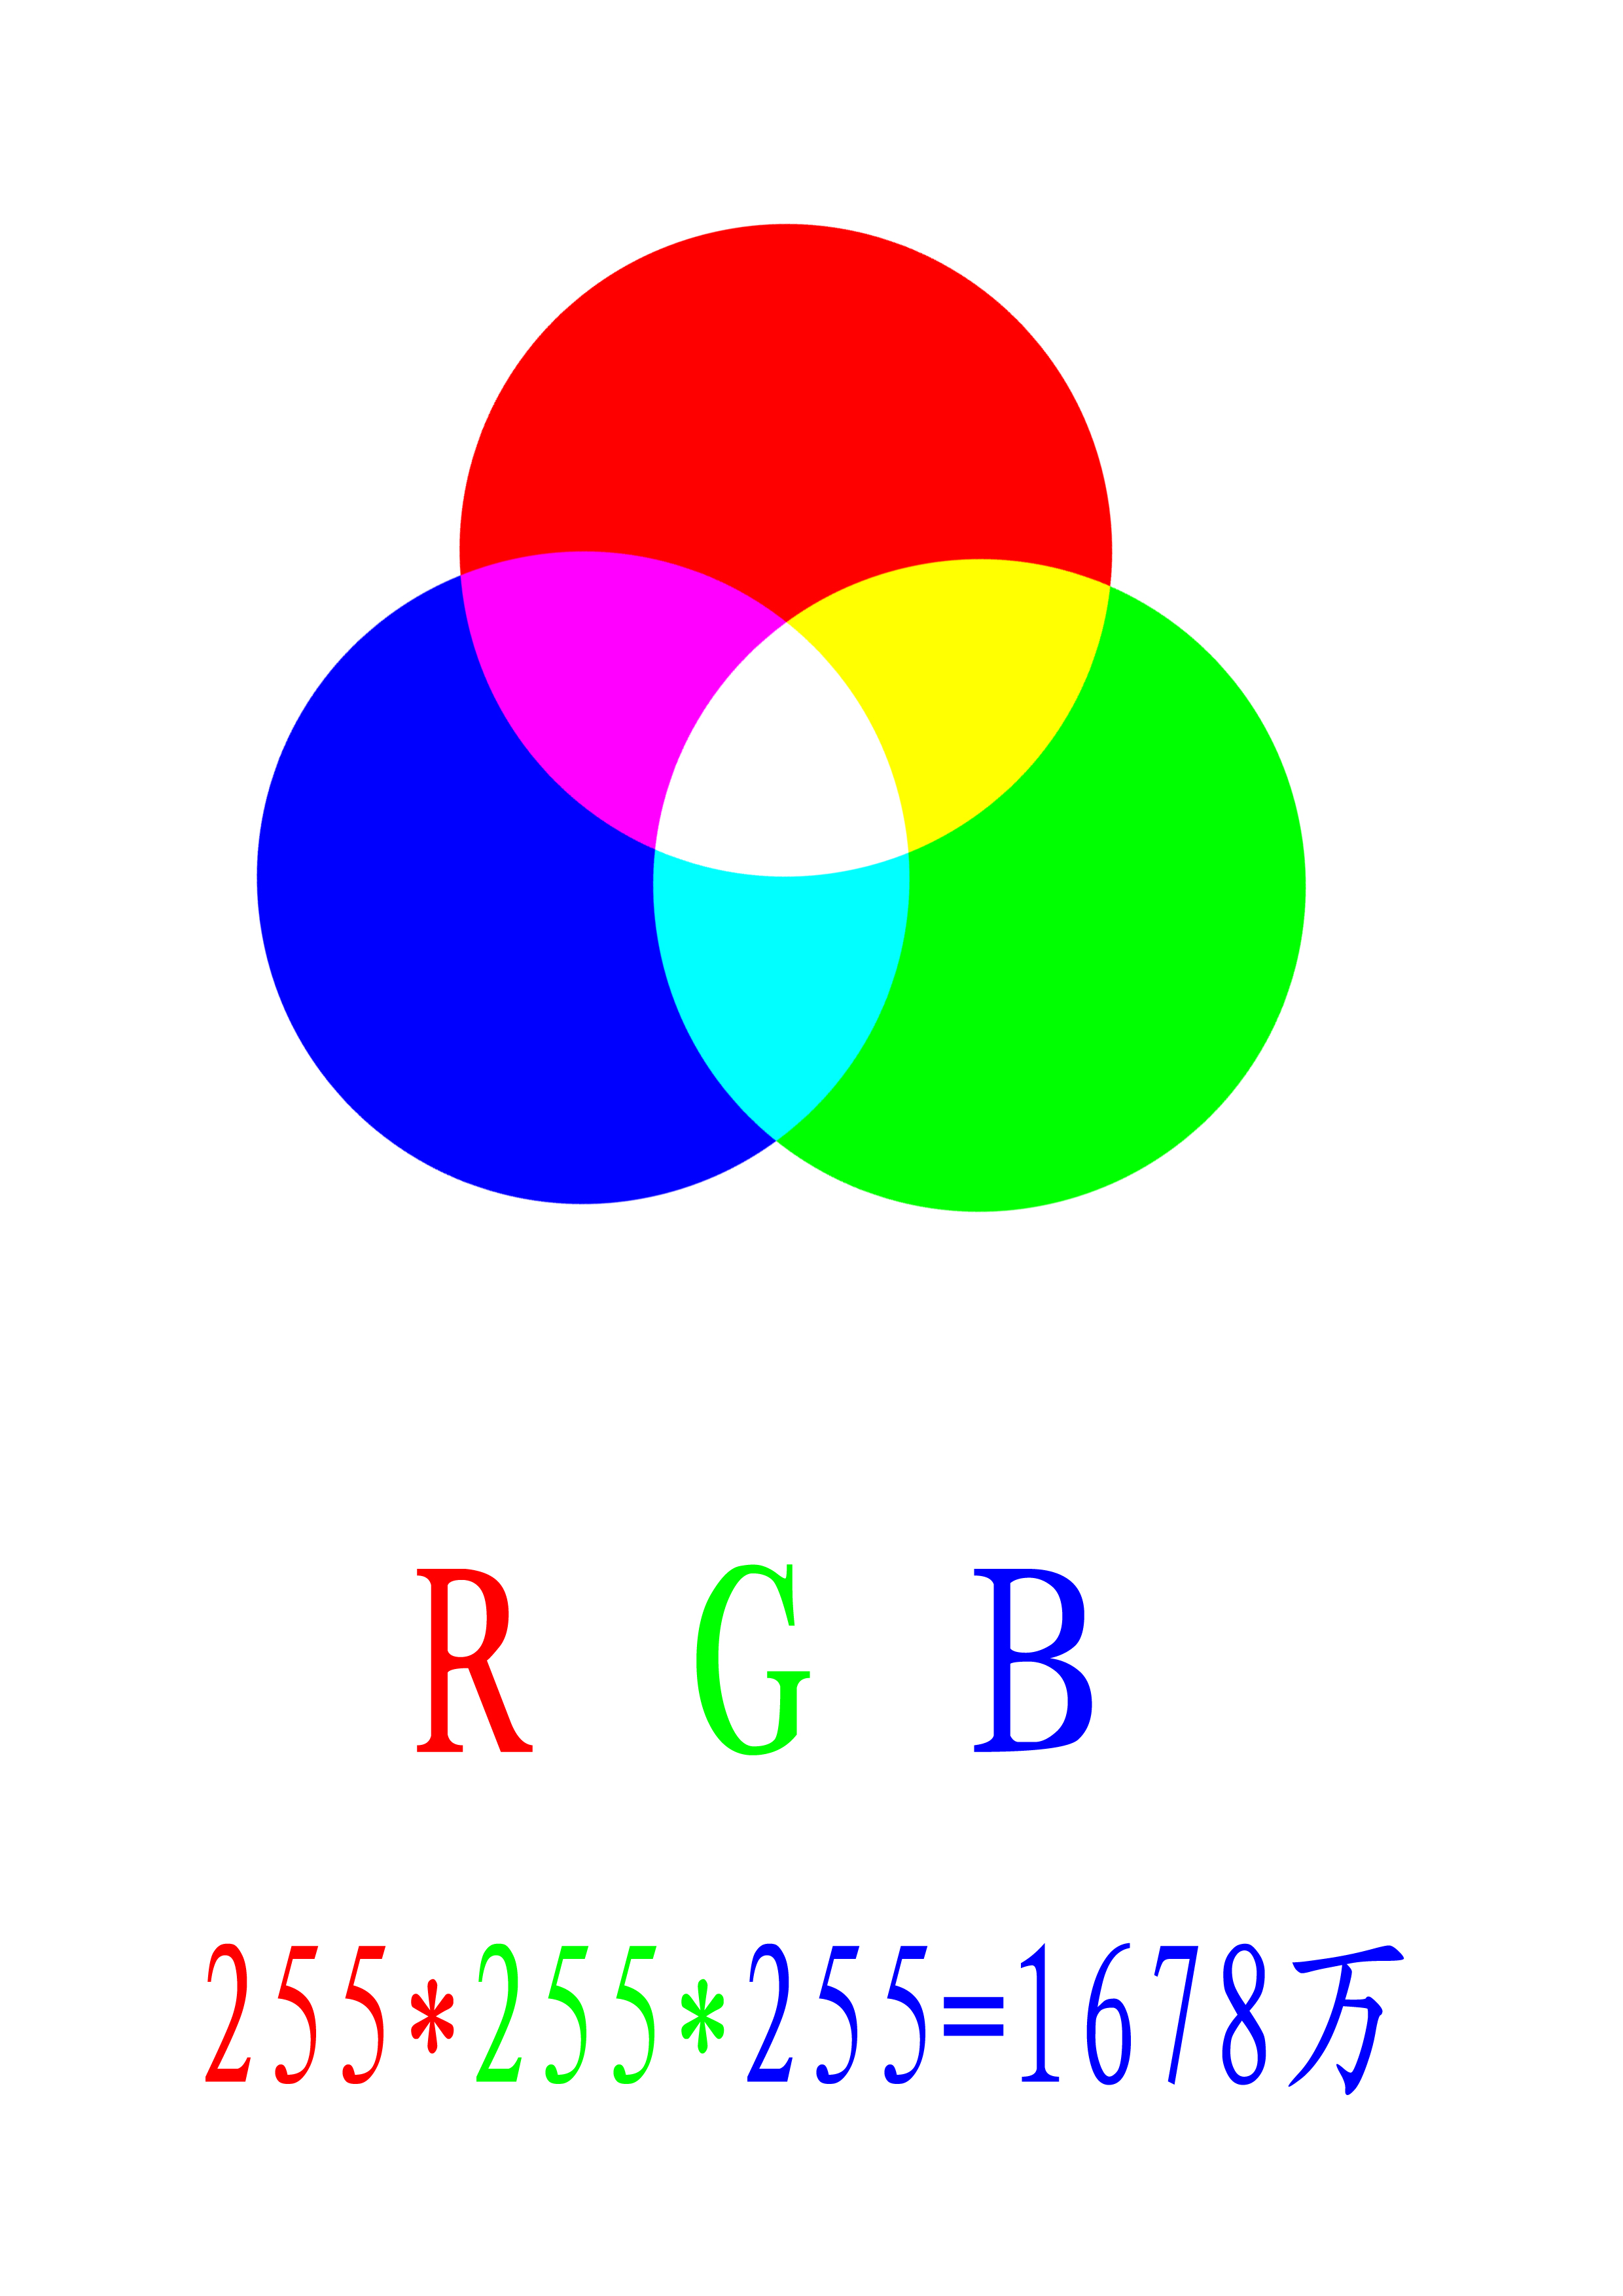 cmy分别对应的是印刷的三原色,青色,品红色和黄色,而减色颜色两两混合